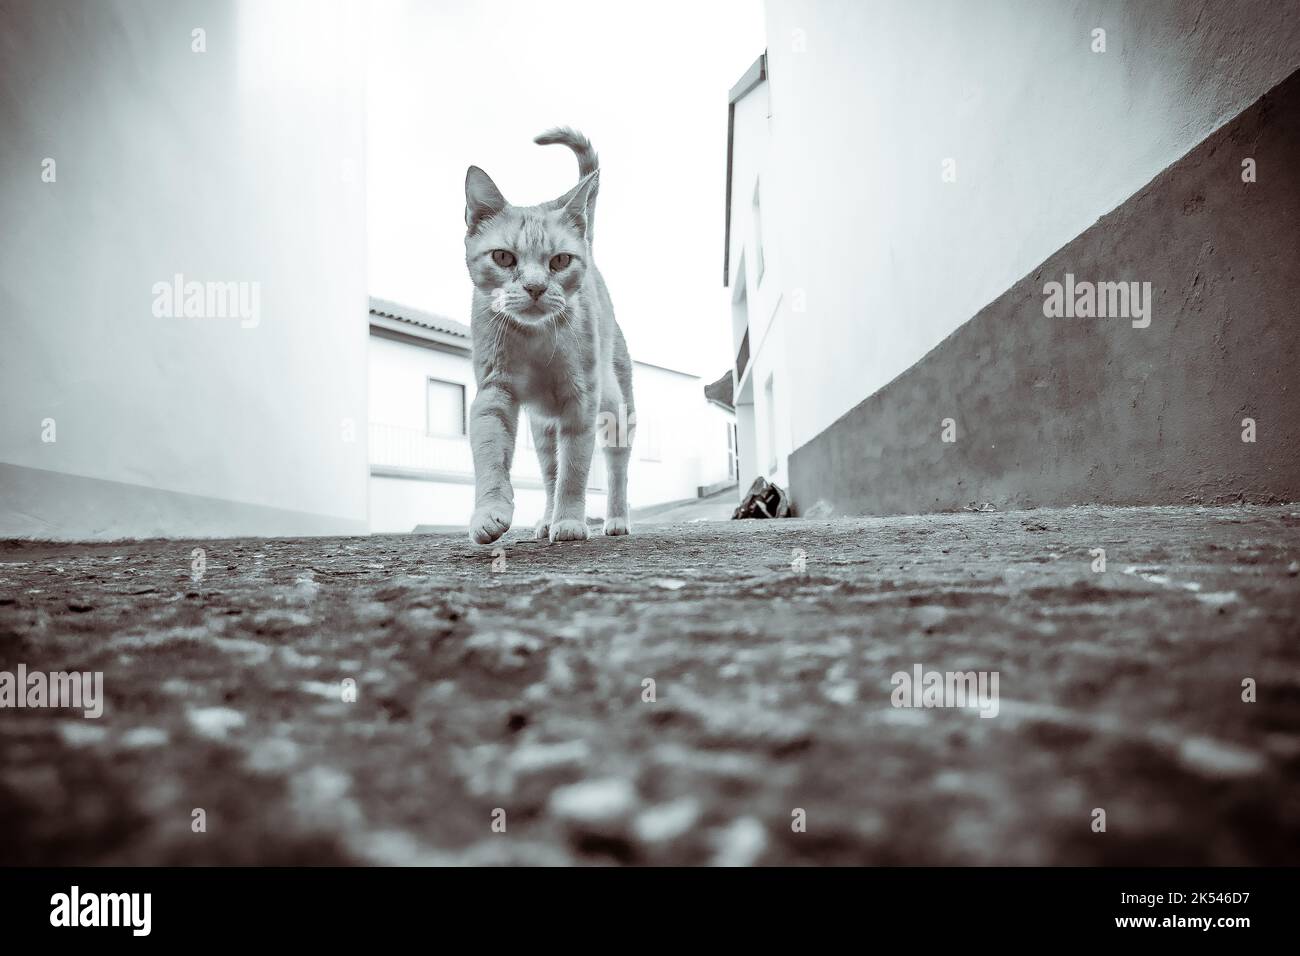 Una foto desde un ángulo bajo de un gato de jengibre caminando hacia la cámara, en blanco y negro Foto de stock